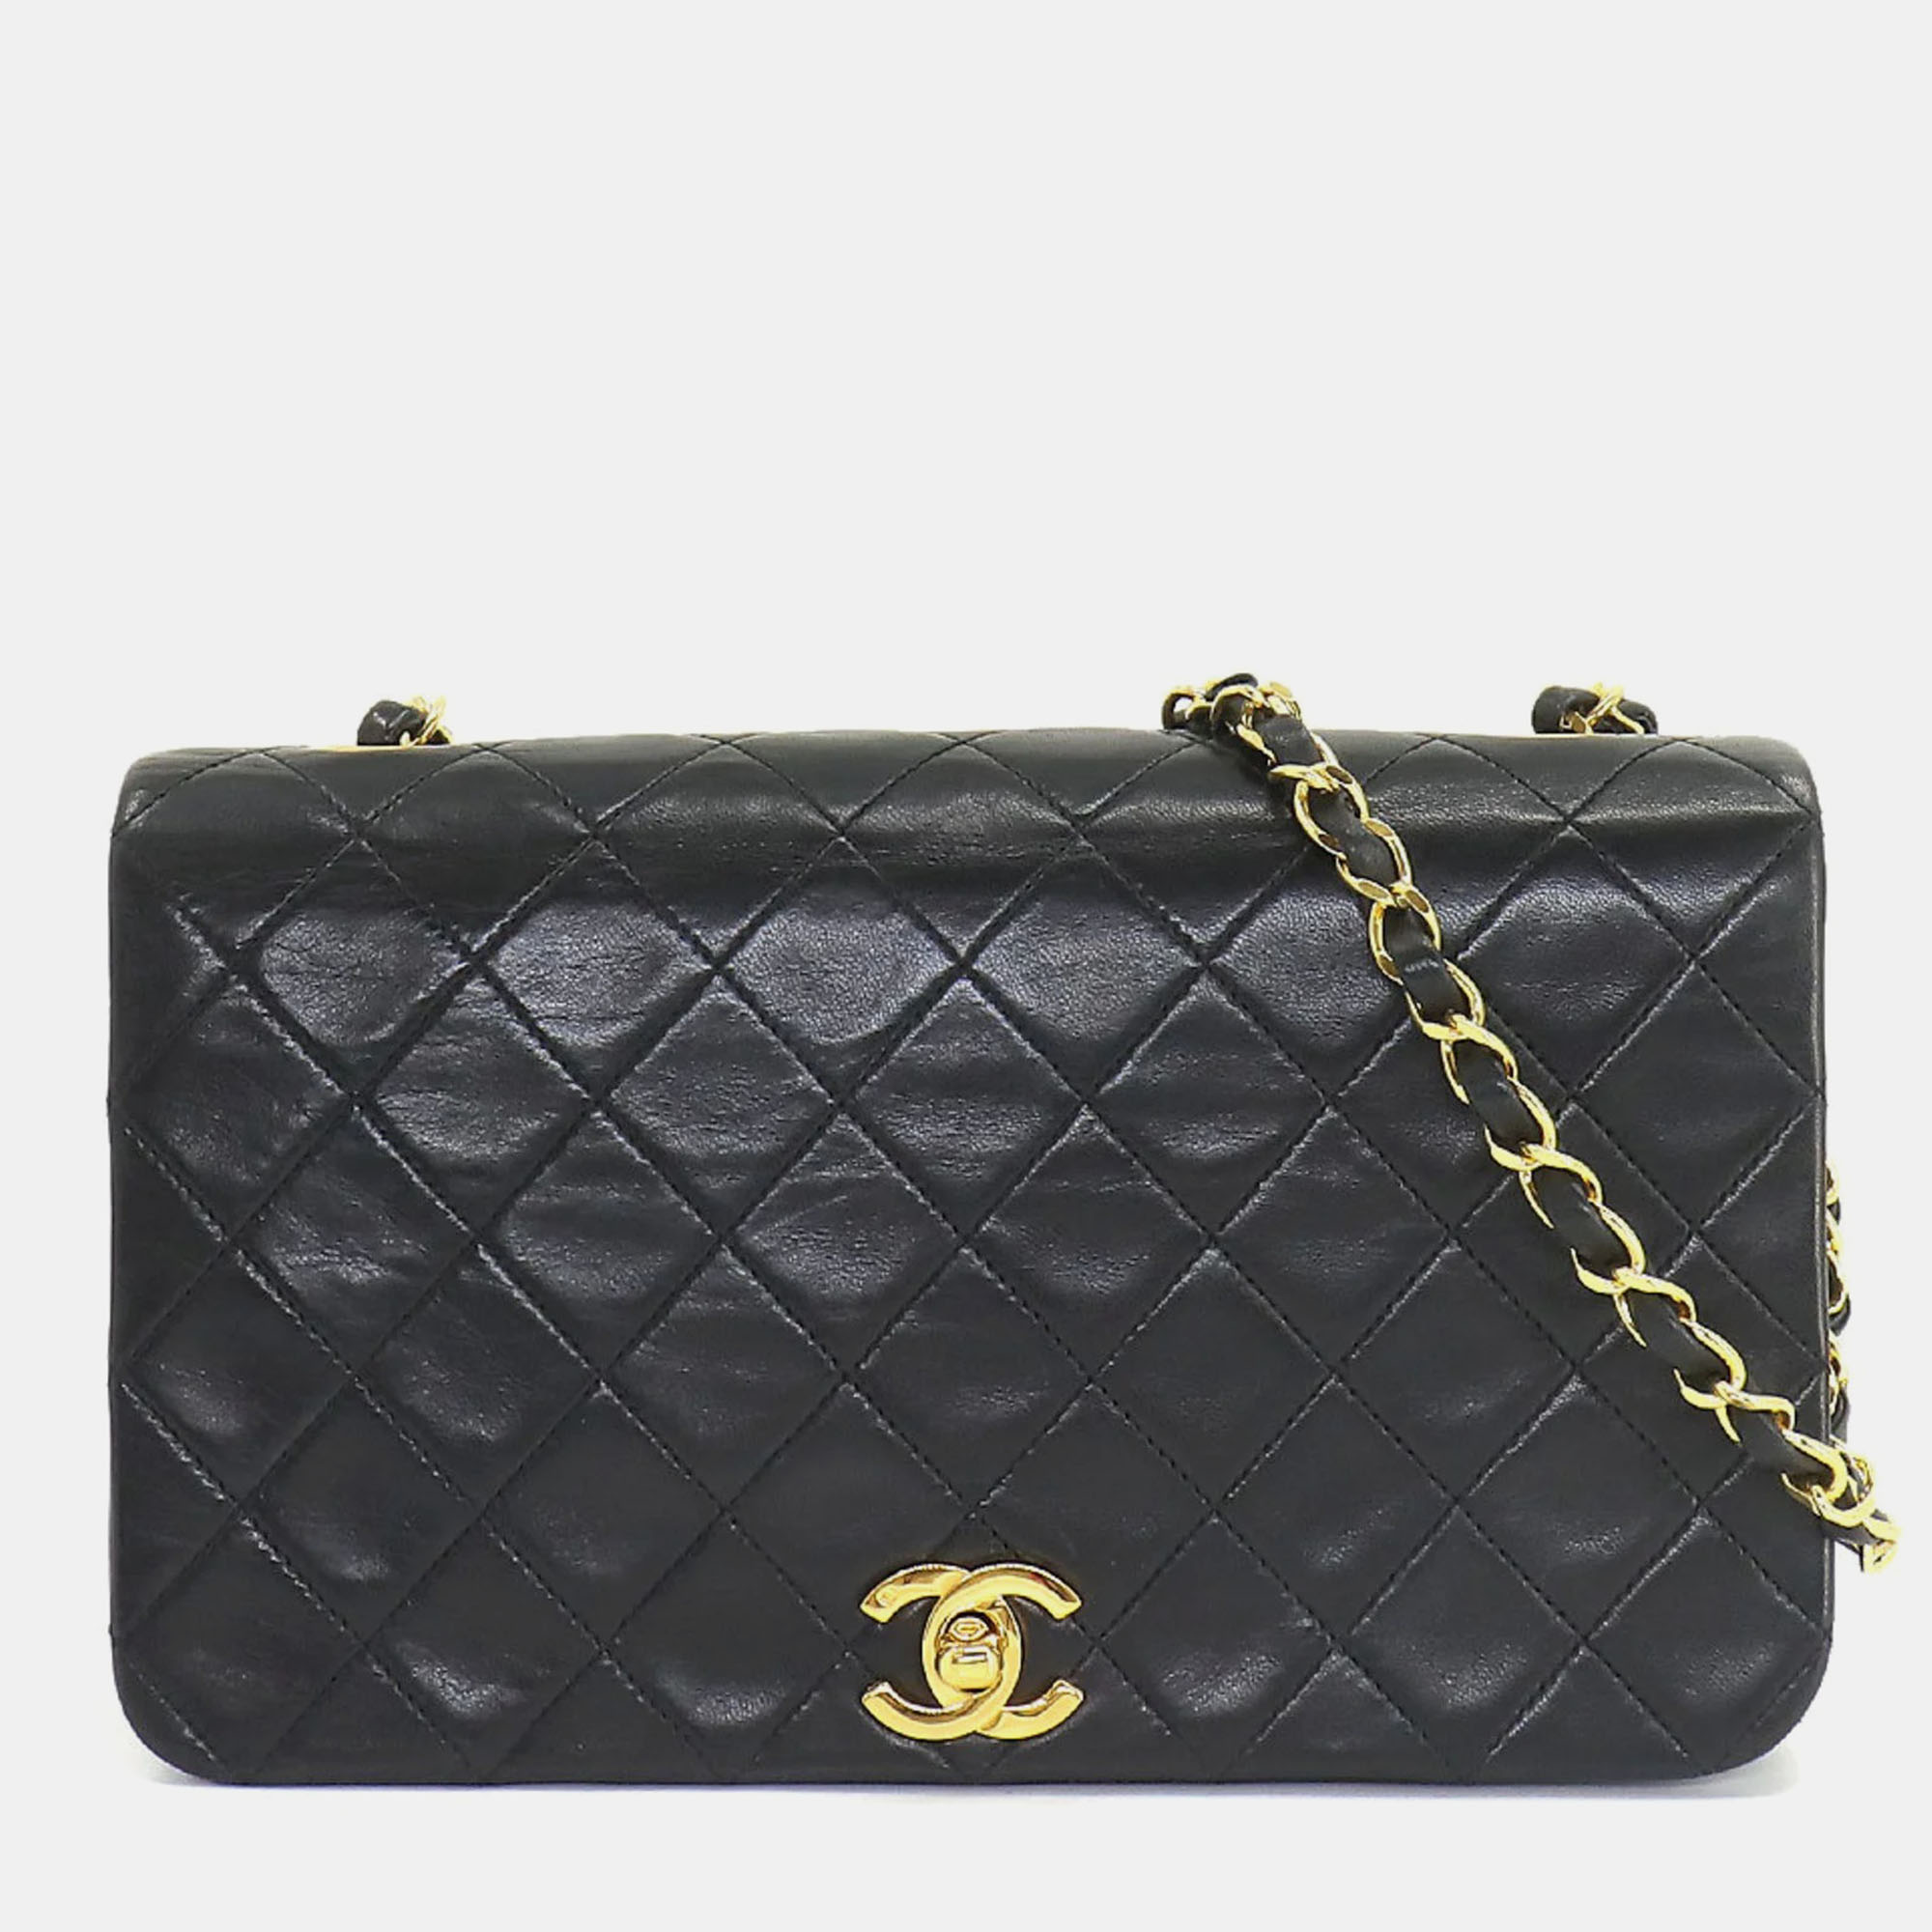 Chanel black calfskin quilted leather vintage flap shoulder bag